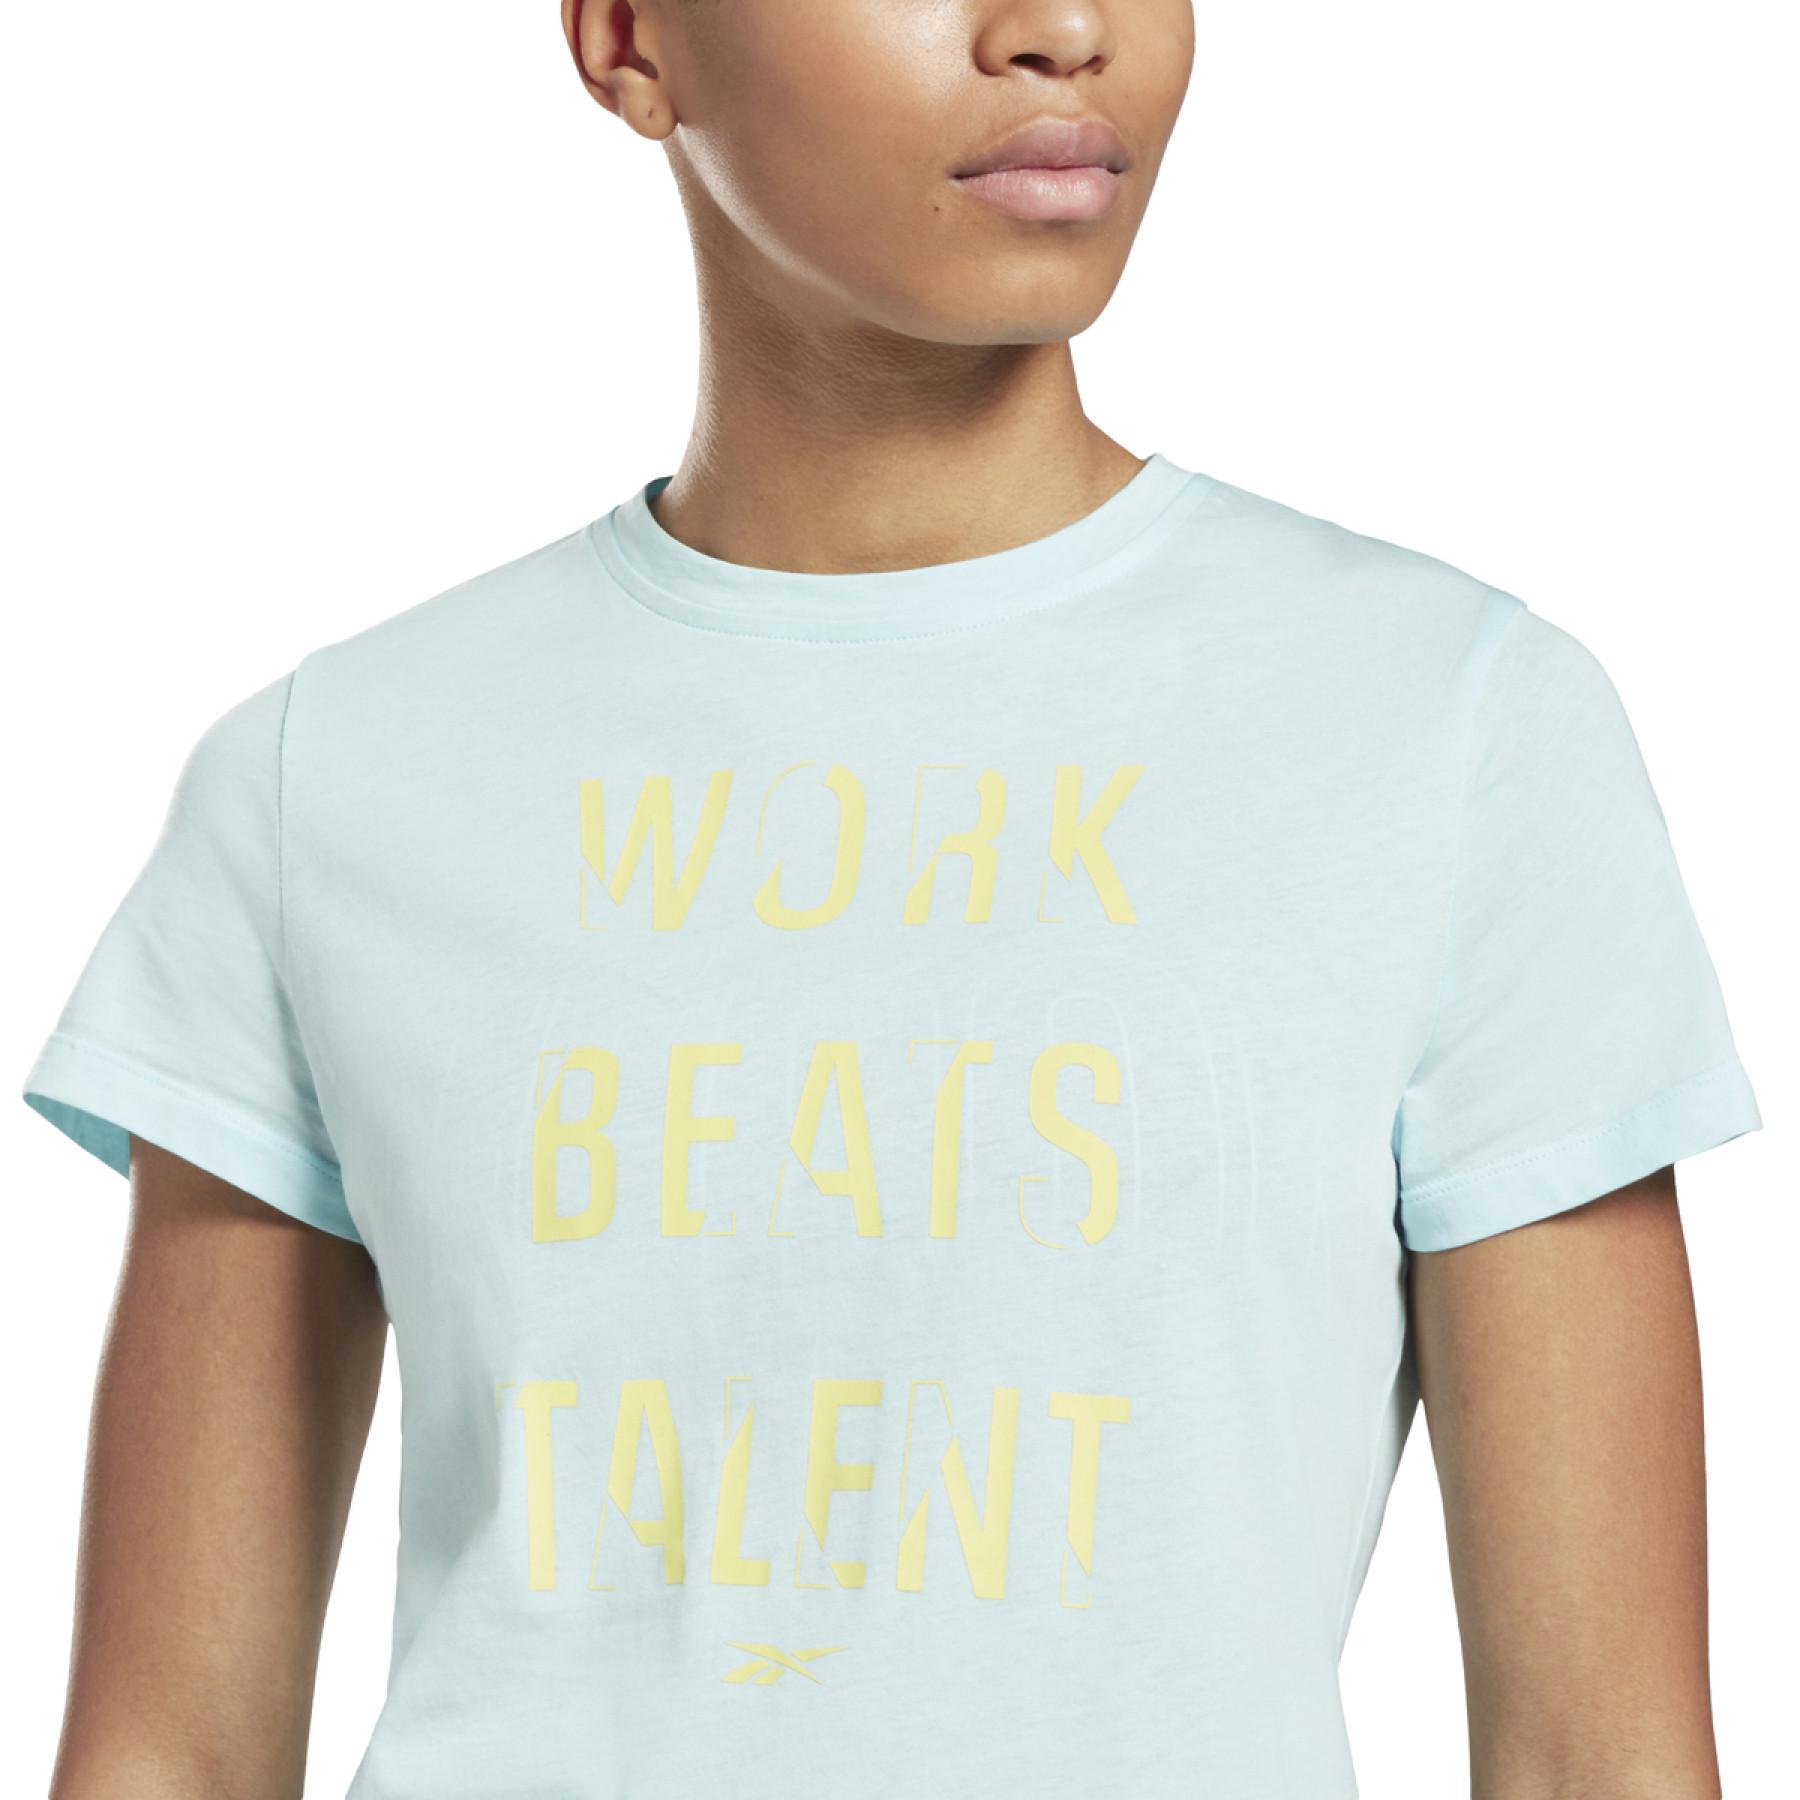 Frauen-T-Shirt Reebok Work Beats Talent Graphic